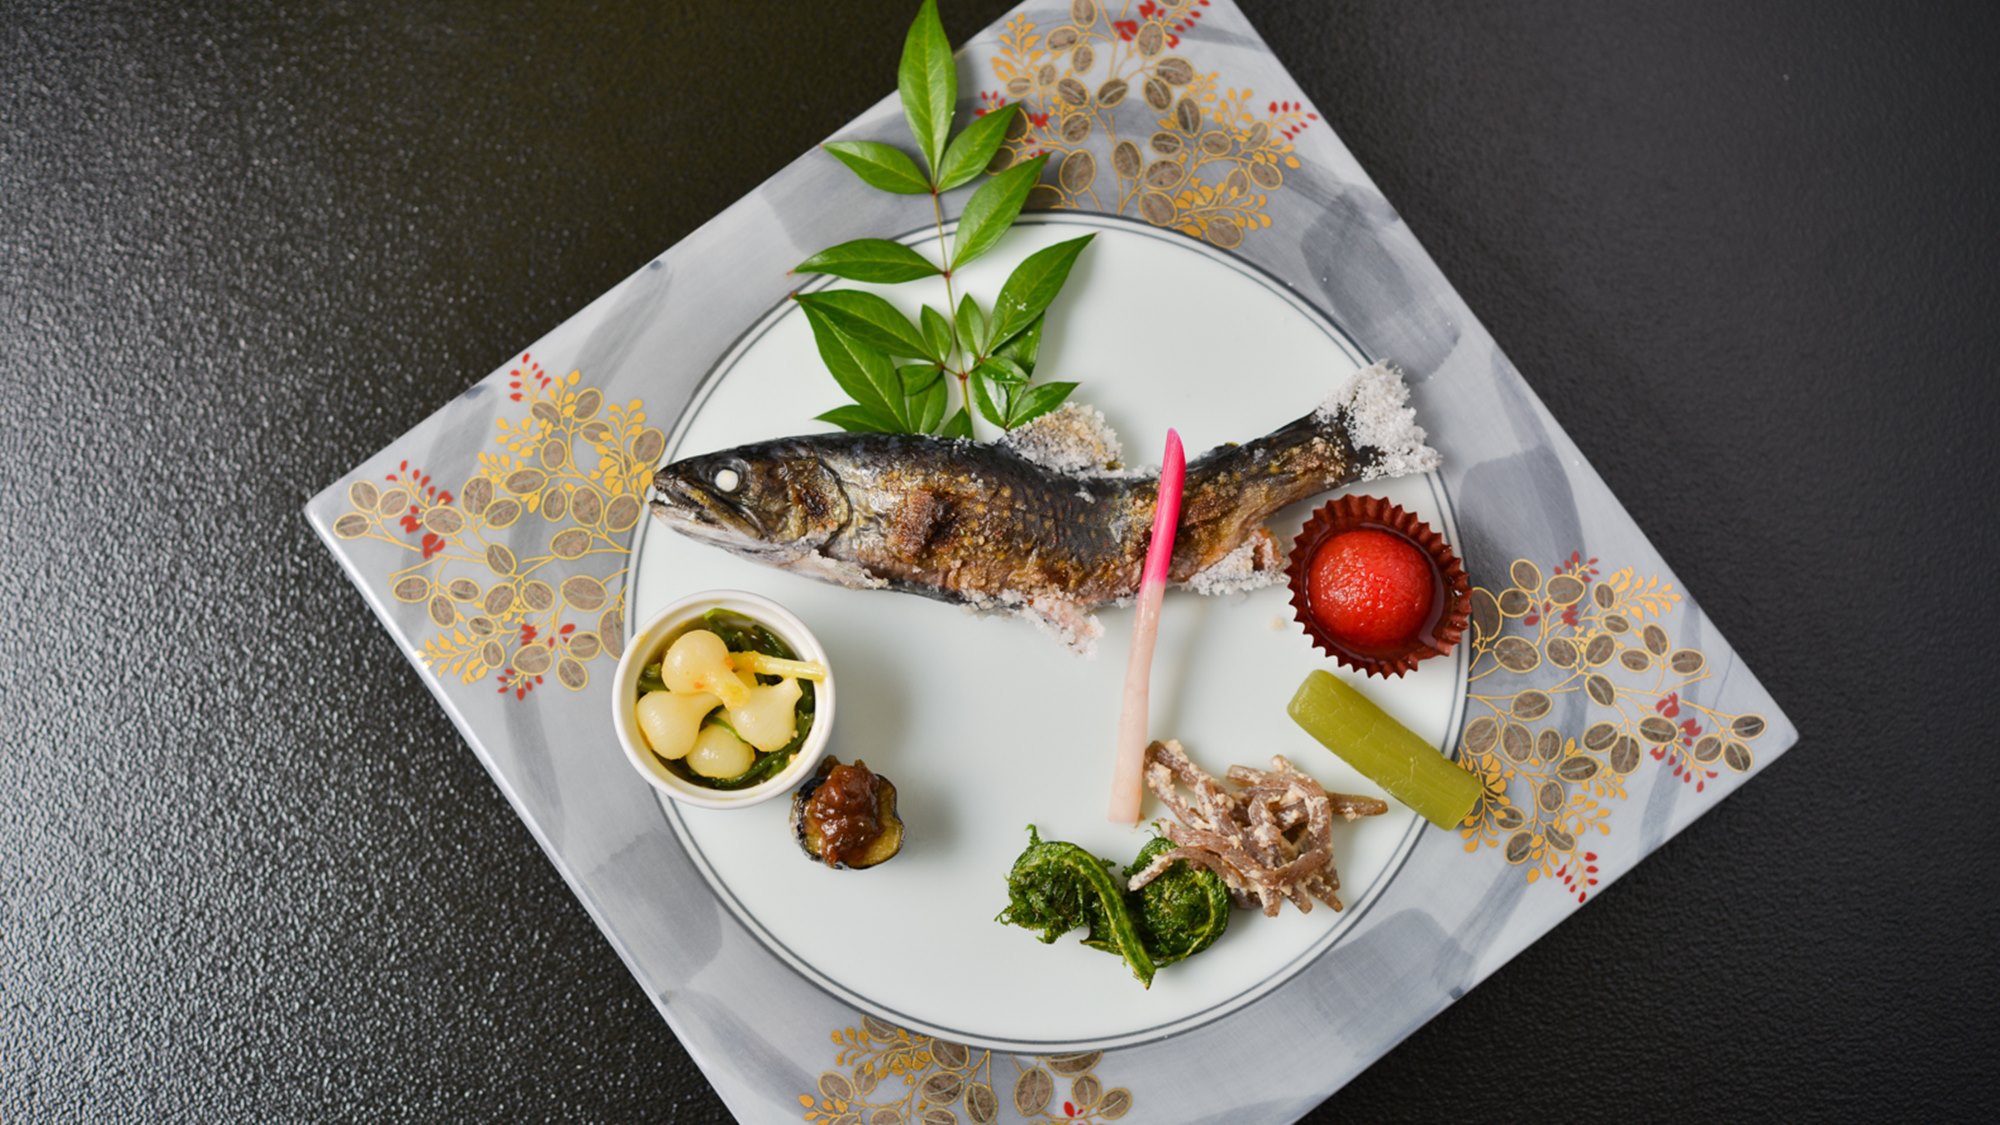 *夕食一例／旬の川魚や山菜など、地場産の食材を使った山里の自然の恵みをご堪能ください。